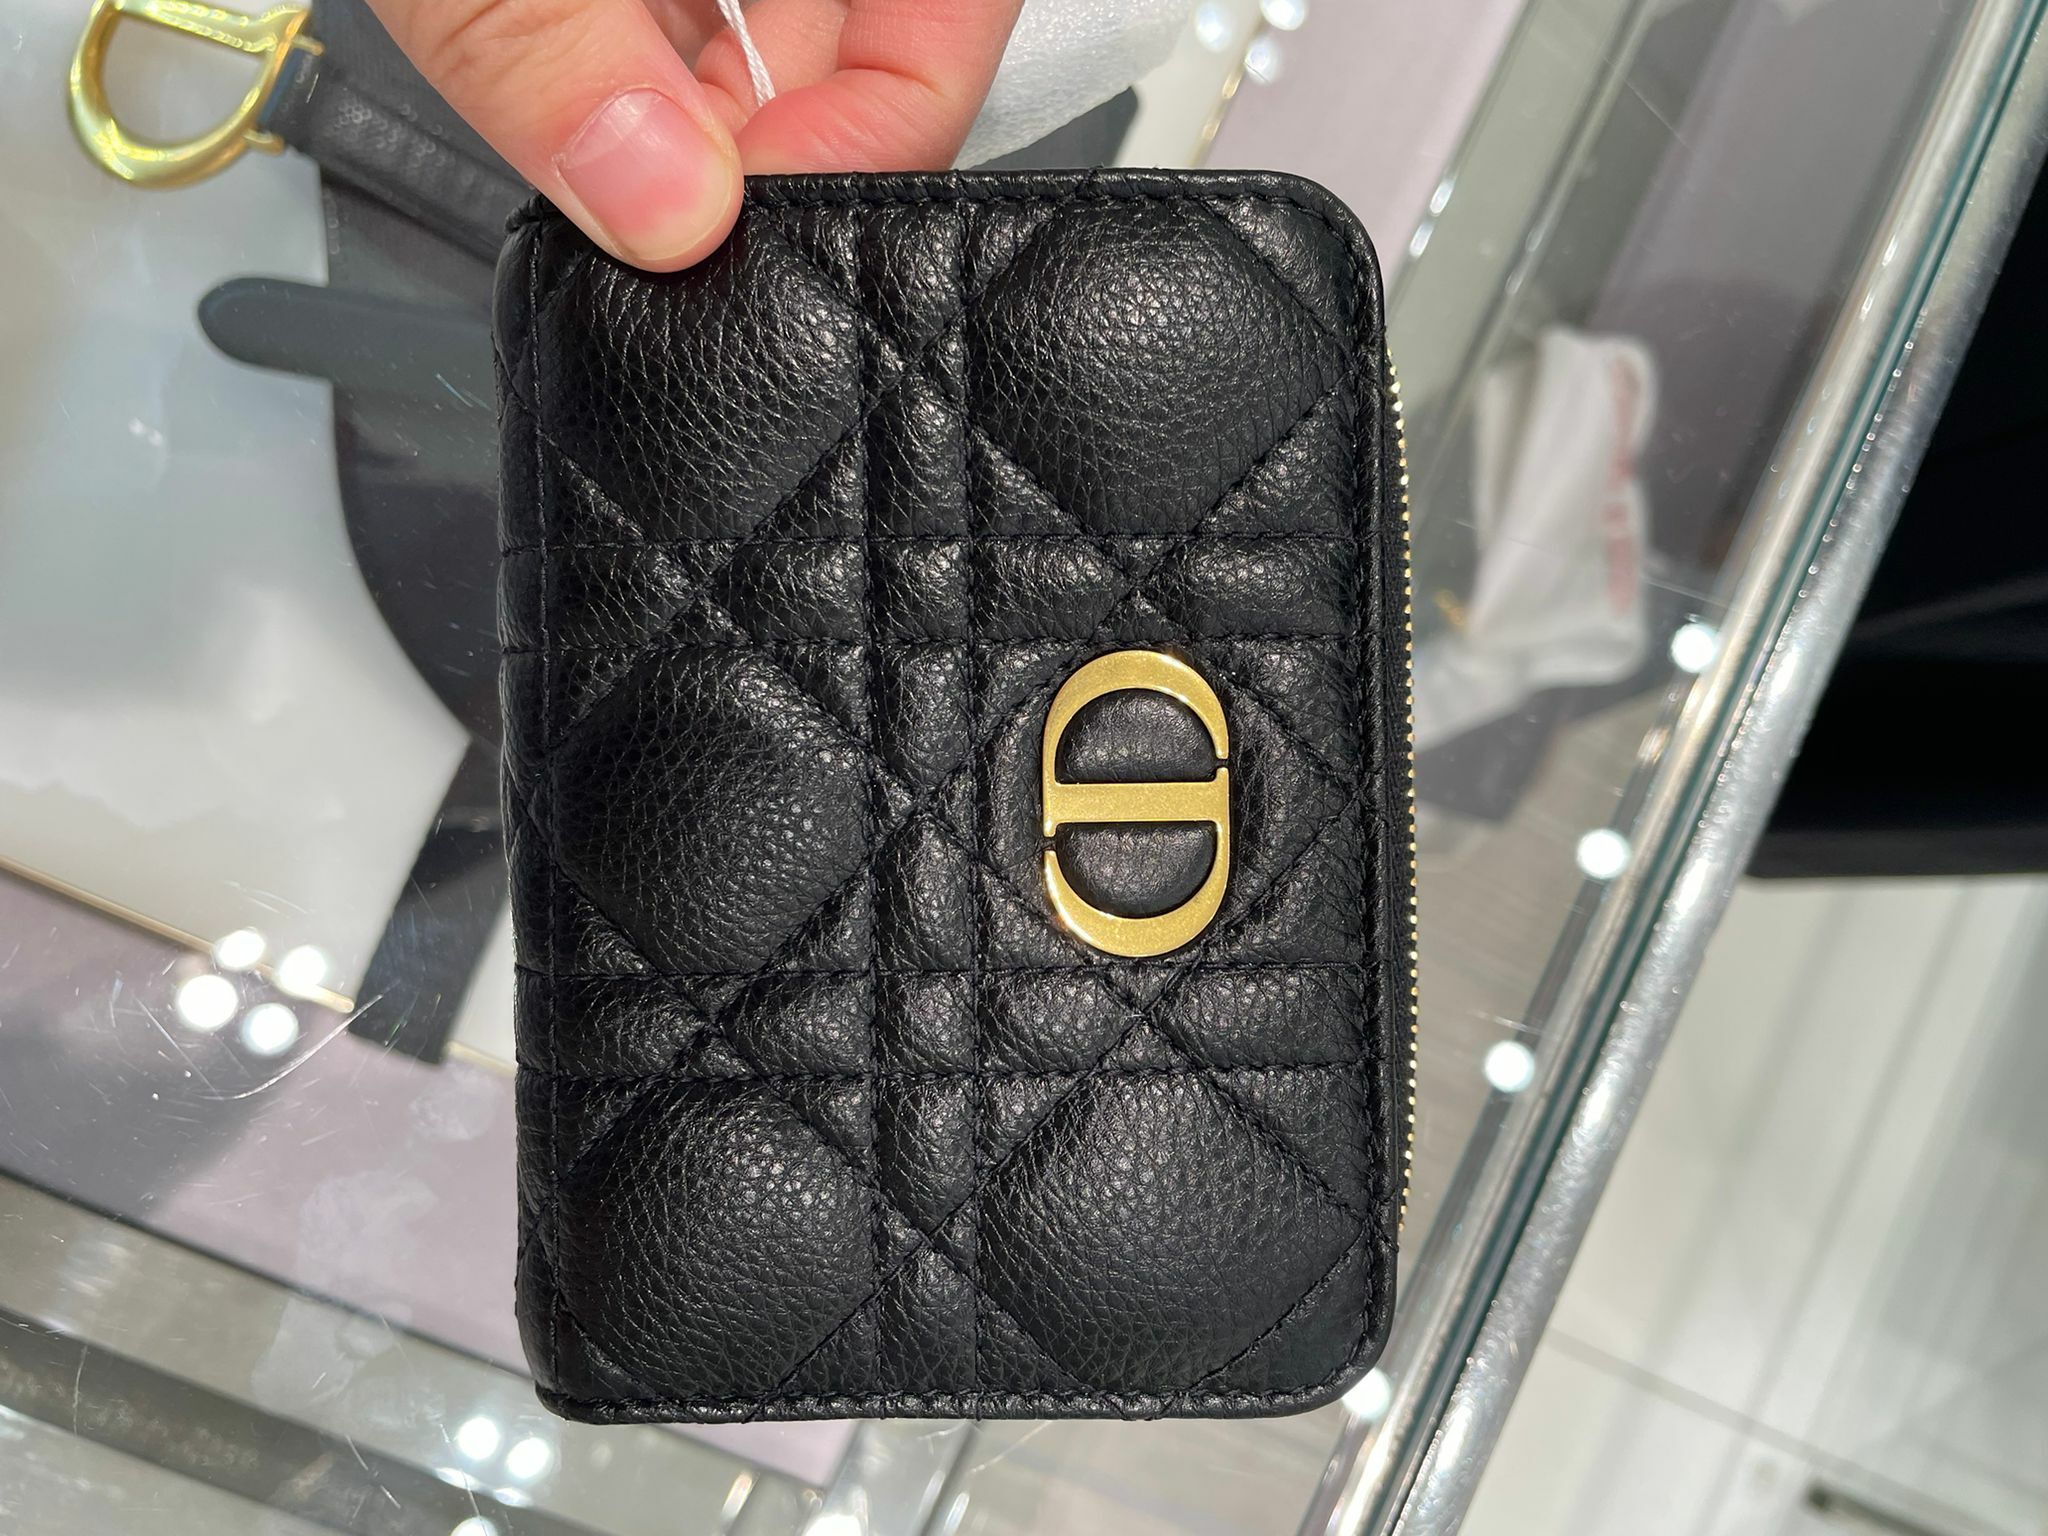 Dior Caro compact zipped wallet Black Calfskin